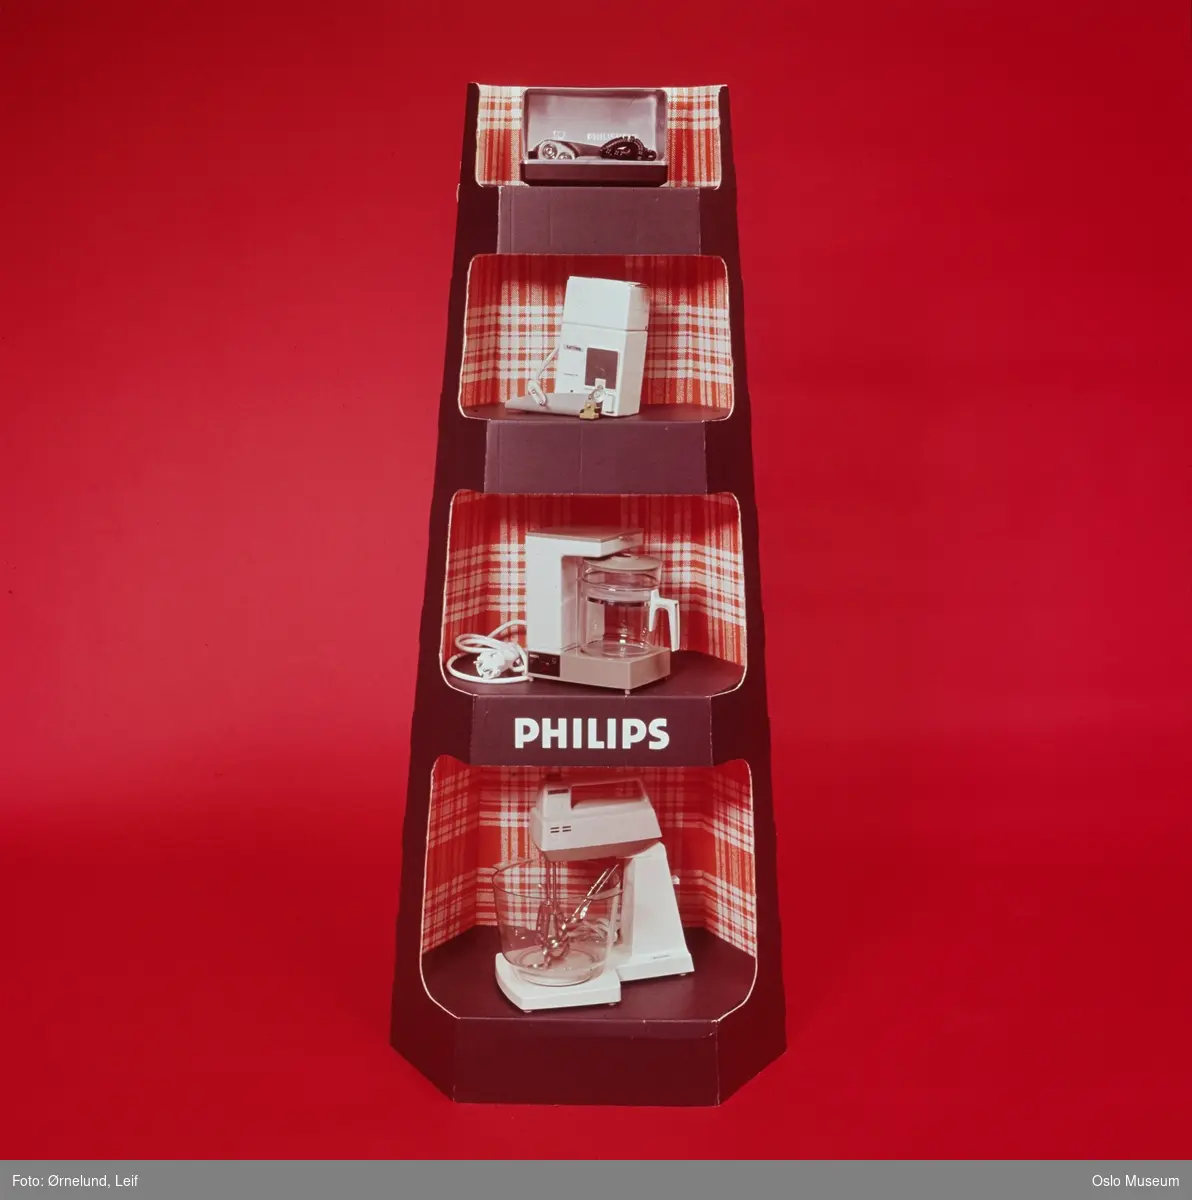 Den nederlandske elektronikkgiganten Philips hadde i perioder stor produksjon også i Norge, i tillegg til import og omsetning av produkter fra Philips' øvrige verdensomspennende produksjonsnett. Med dette er Philips fortsatt en gigant på mange ulike markeder fra belysning og småelektrisk utstyr, TV/radio/musikk til avansert medisinsk utstyr.

Norsk Aksjeselskap Philips ble etablert i 1923 som salgsfirma for Philips glødelamper produsert Nederland. Etter hvert stor egenproduksjon i Norge, først og fremst ved glødelampefabrikken Philips Fabrikk Norsk A/S i Arendal og Radio Industri A/S på Ryen (Sandstuveien) i Oslo.